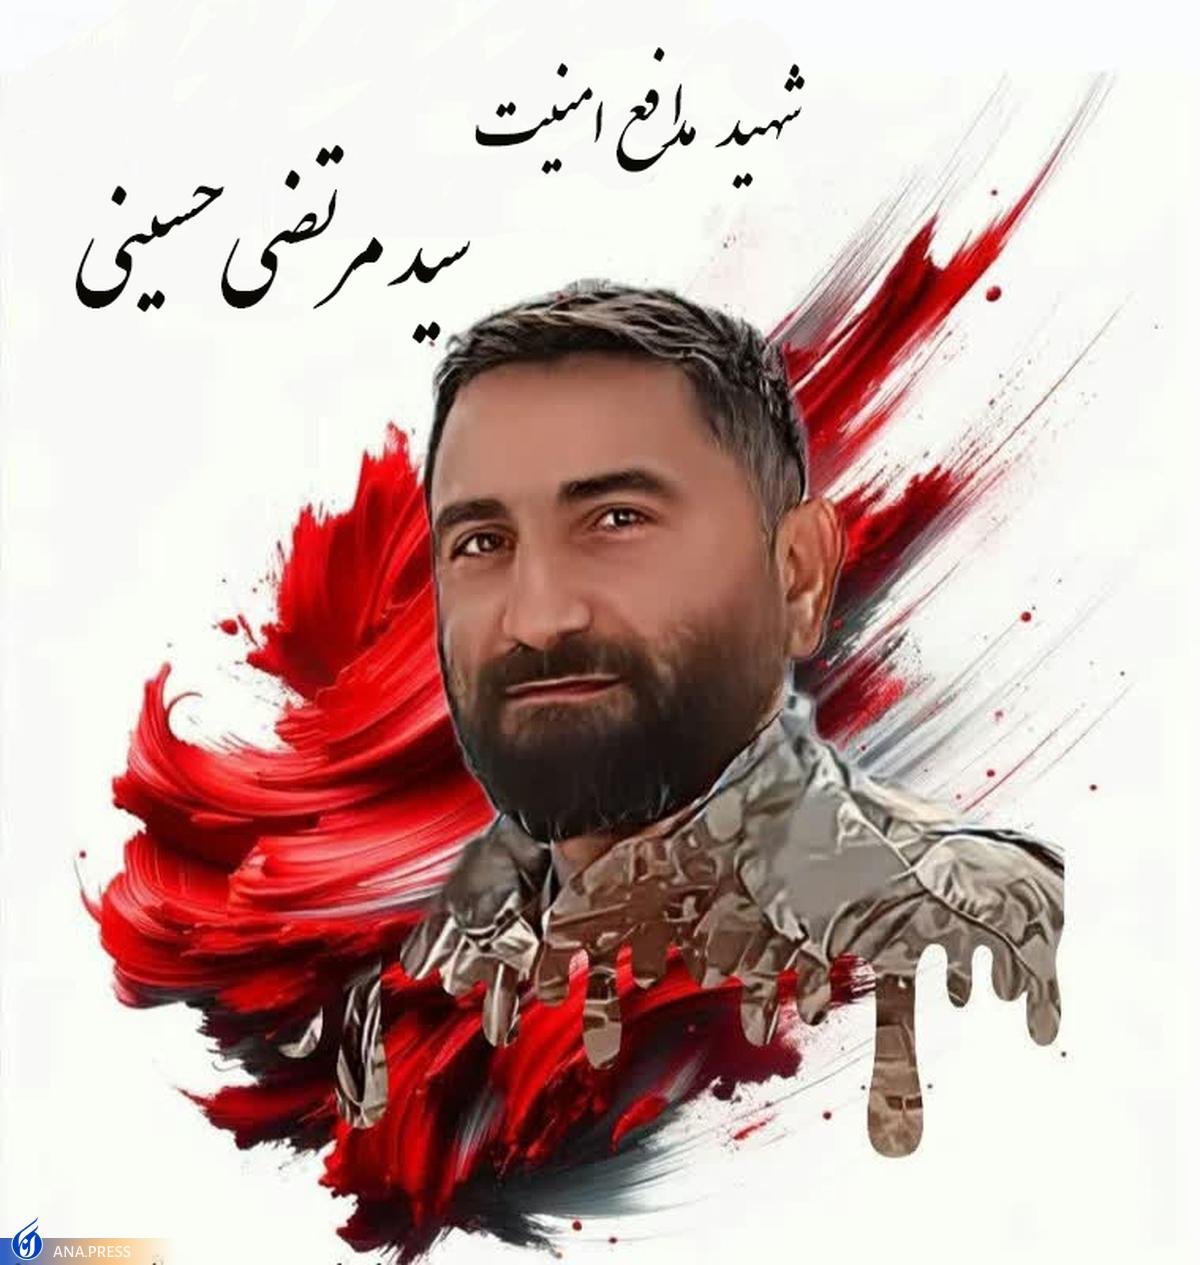 طهرانچی: شهید حسینی با عزمی استوار در سنگر نظم و امنيت اجتماعی خدمت كرد